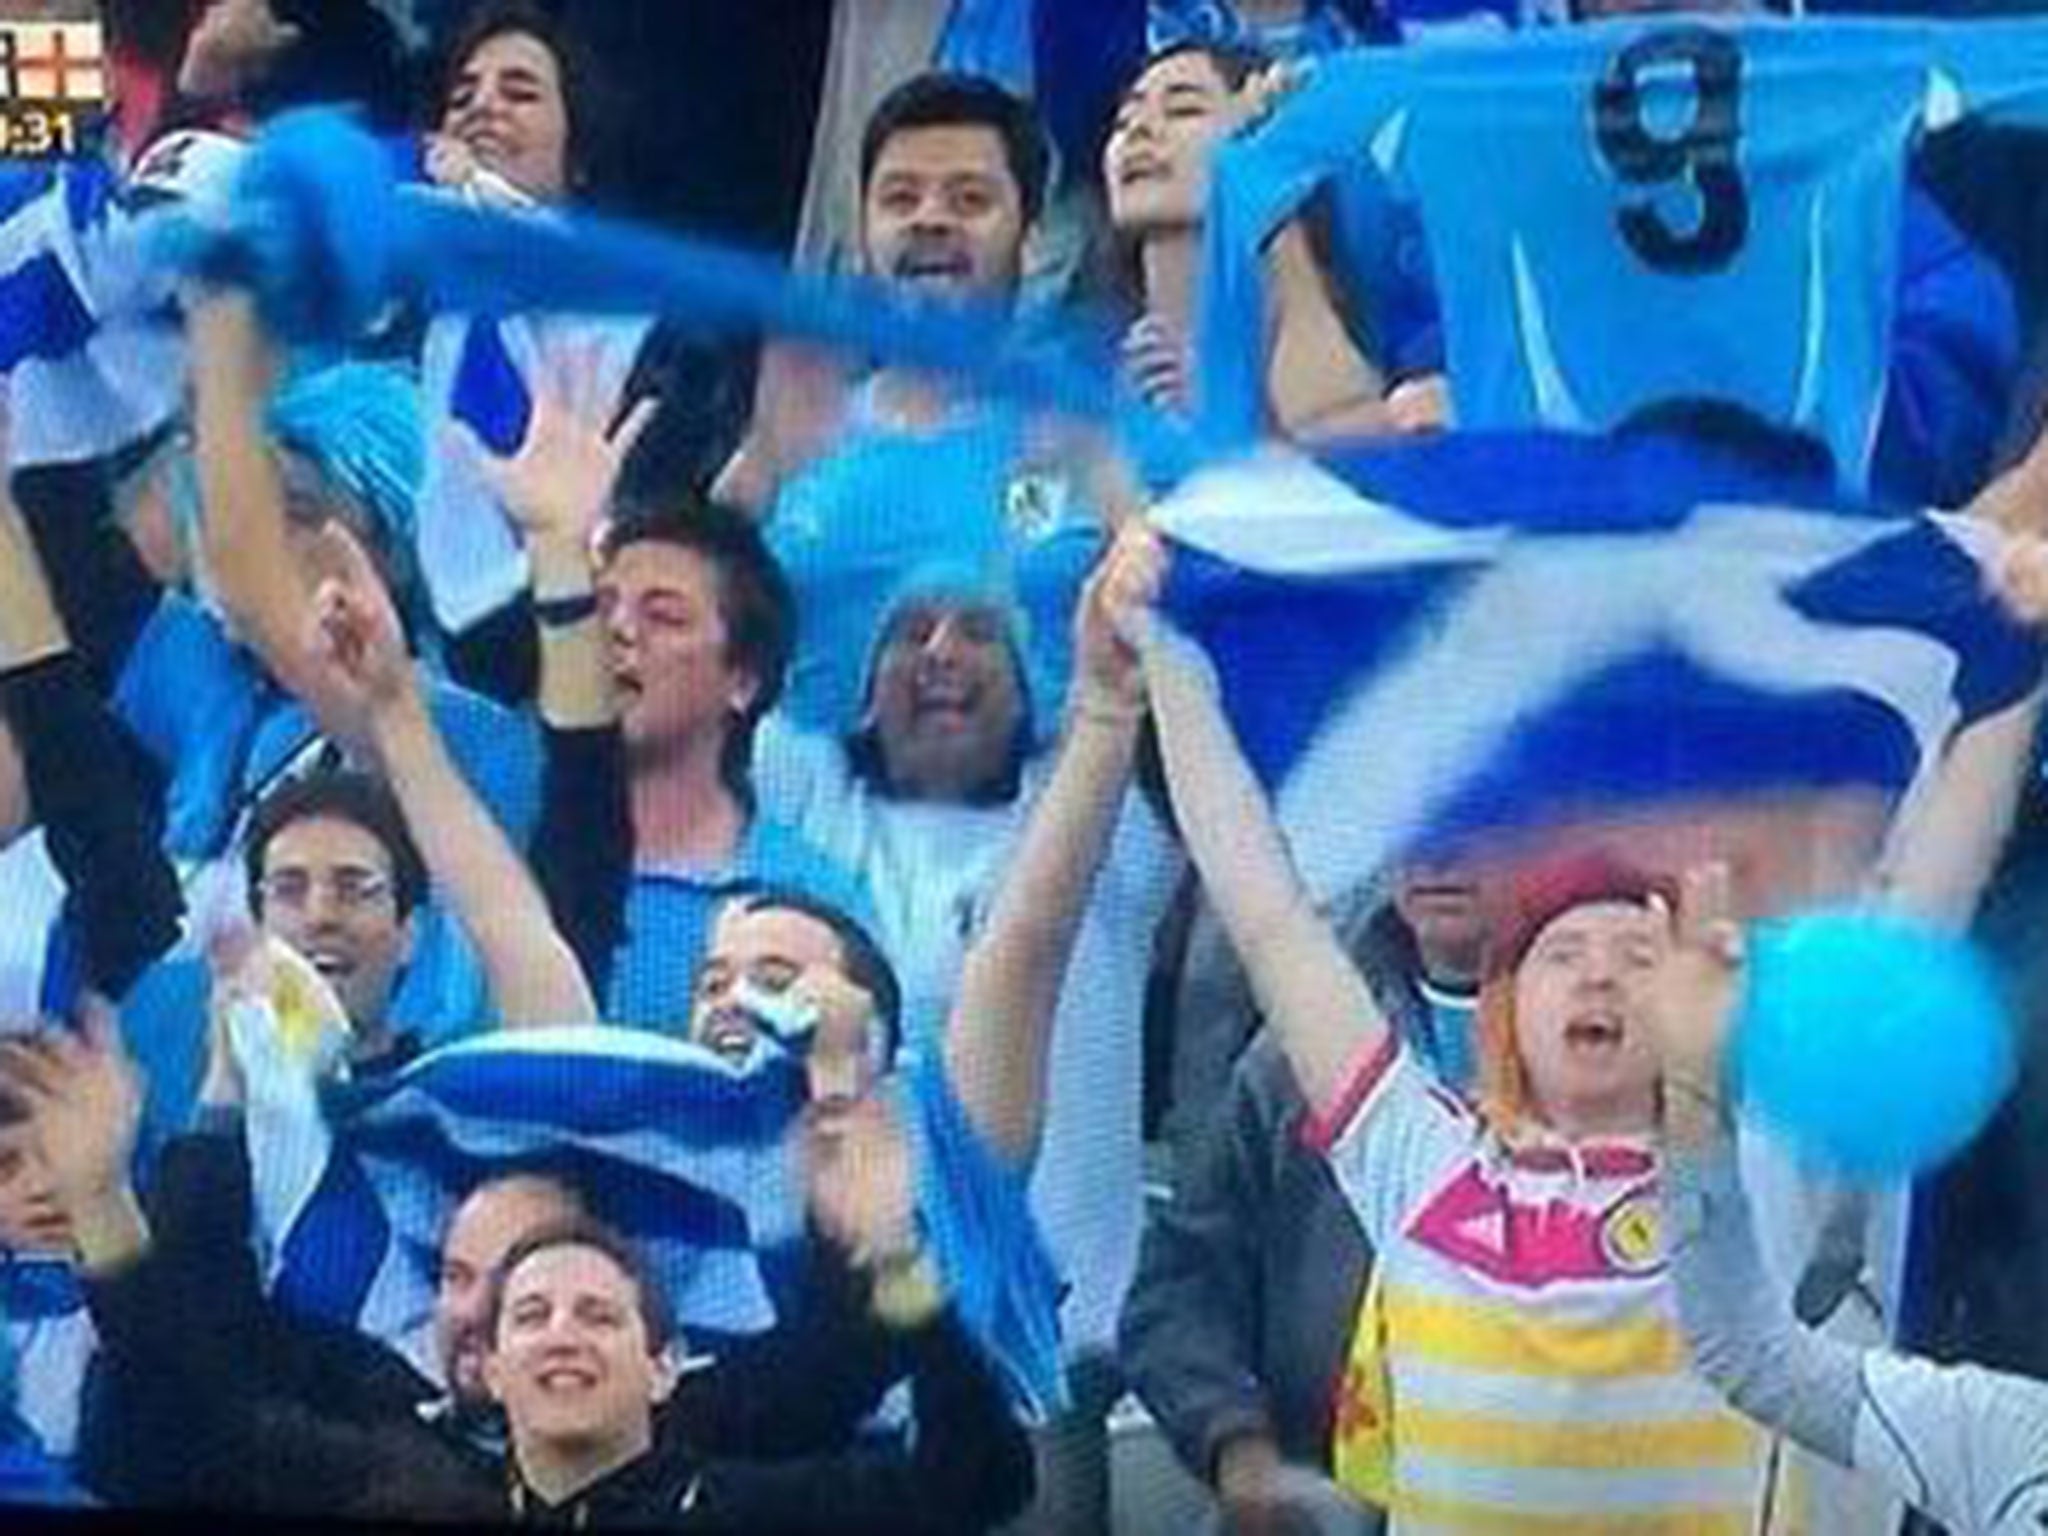 Scotland fan Mark McConville